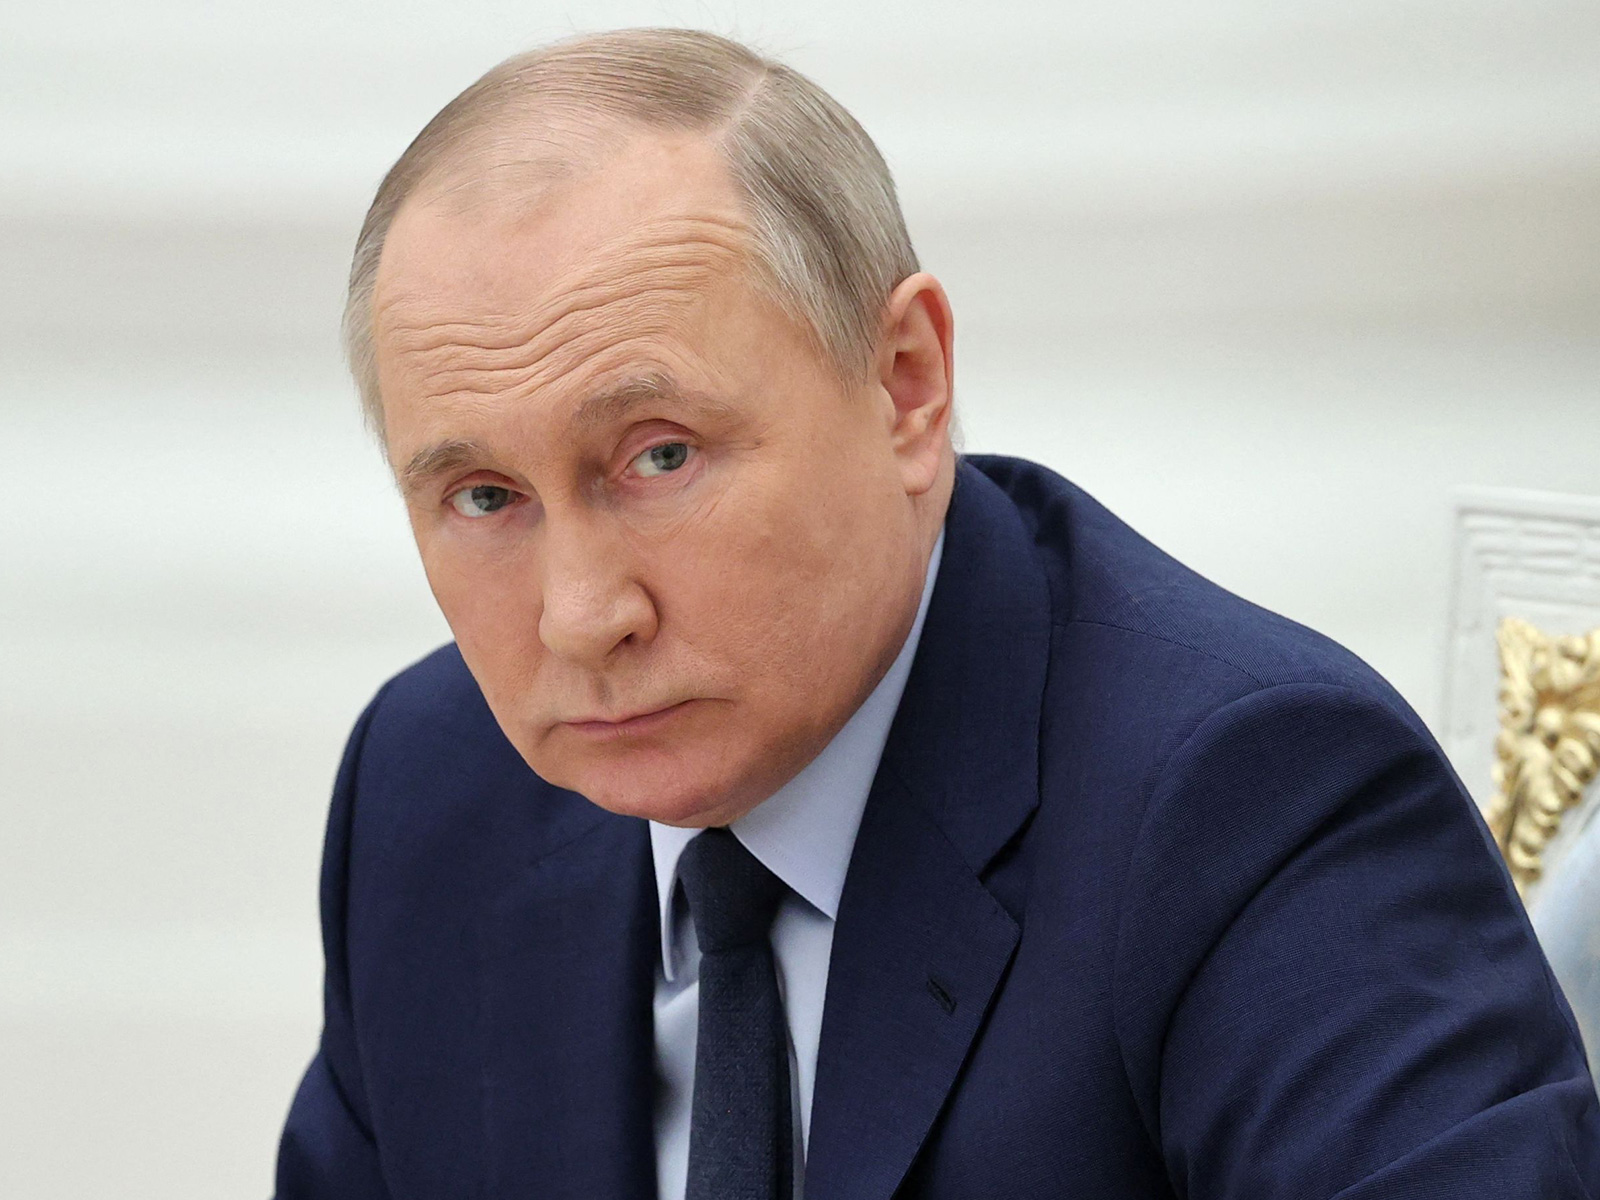 “Dimër me makthe në Europë”, java e vendimeve të BE: Putini përgatit luftë të gjithanshme me gaz e ushqim